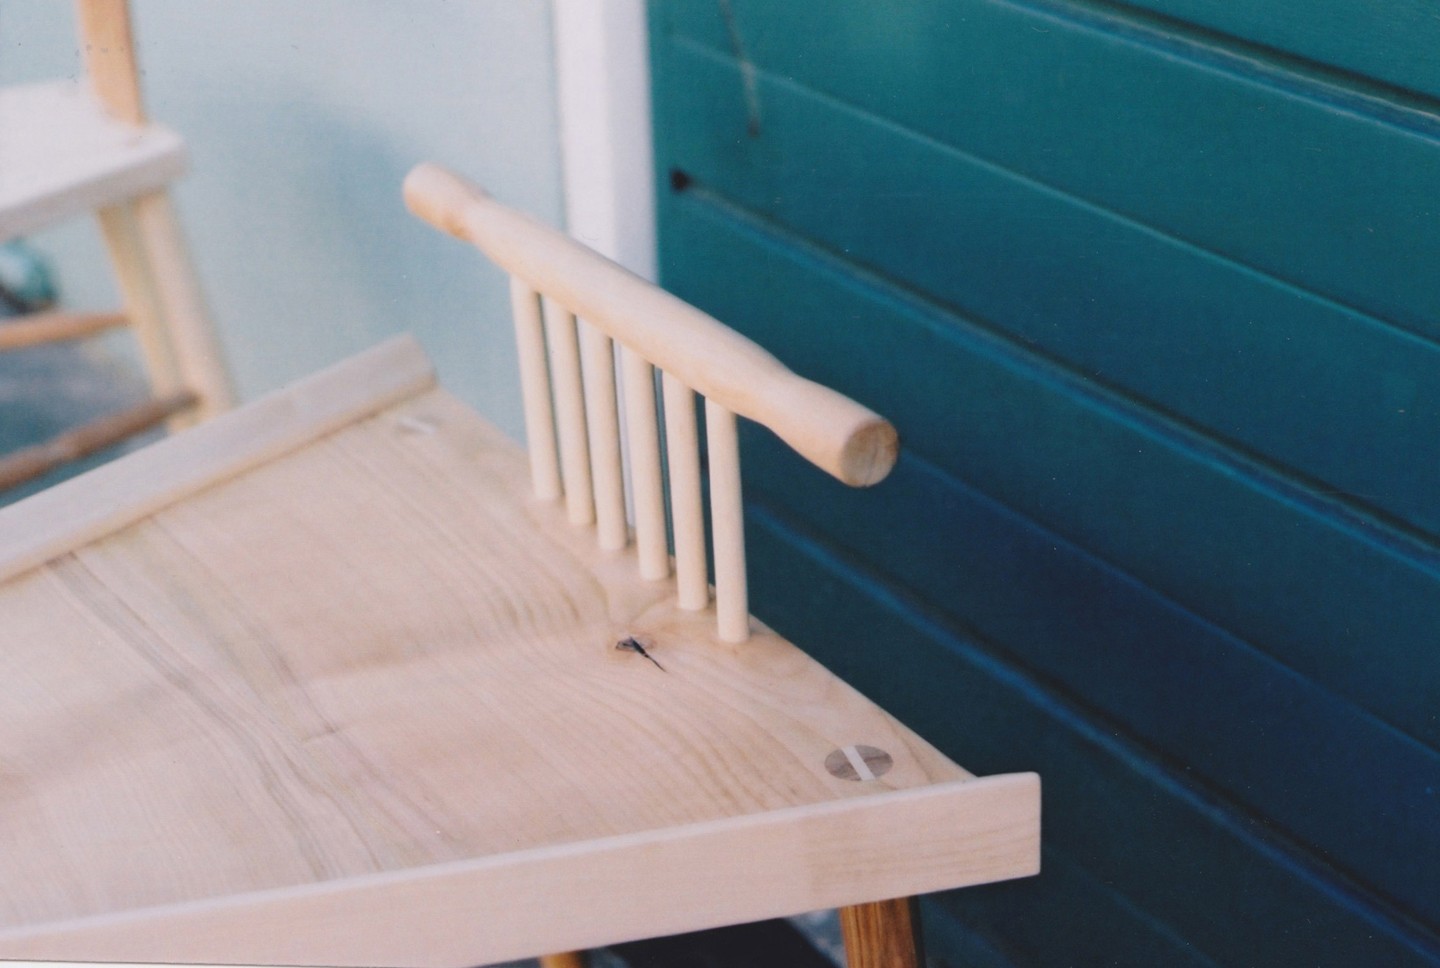 Designer cria cadeira para solucionar o problema de manspreading (Foto: Divulgação)